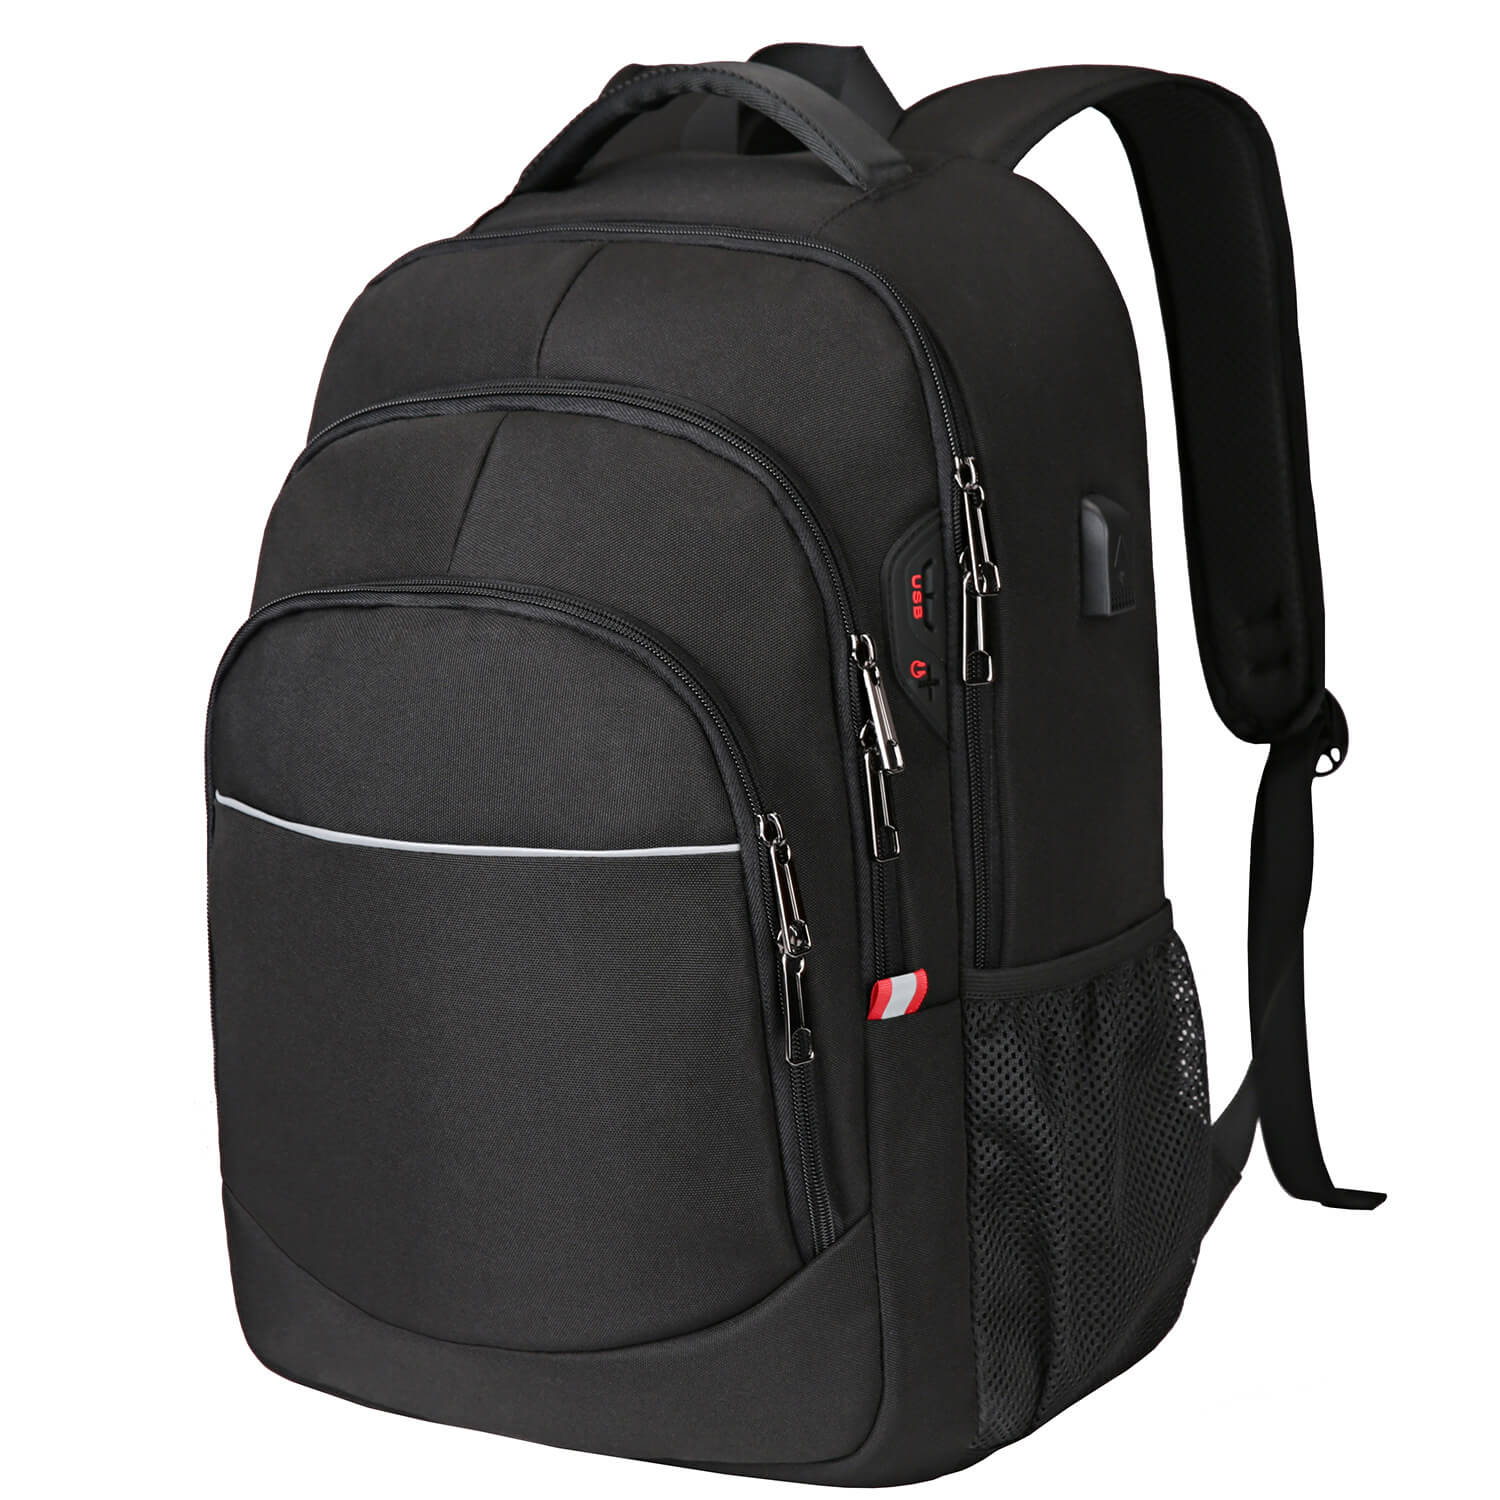 Vbiger Multi-purpose Business Backpack 15.6" Laptop Bag with FRID Pocket, Black